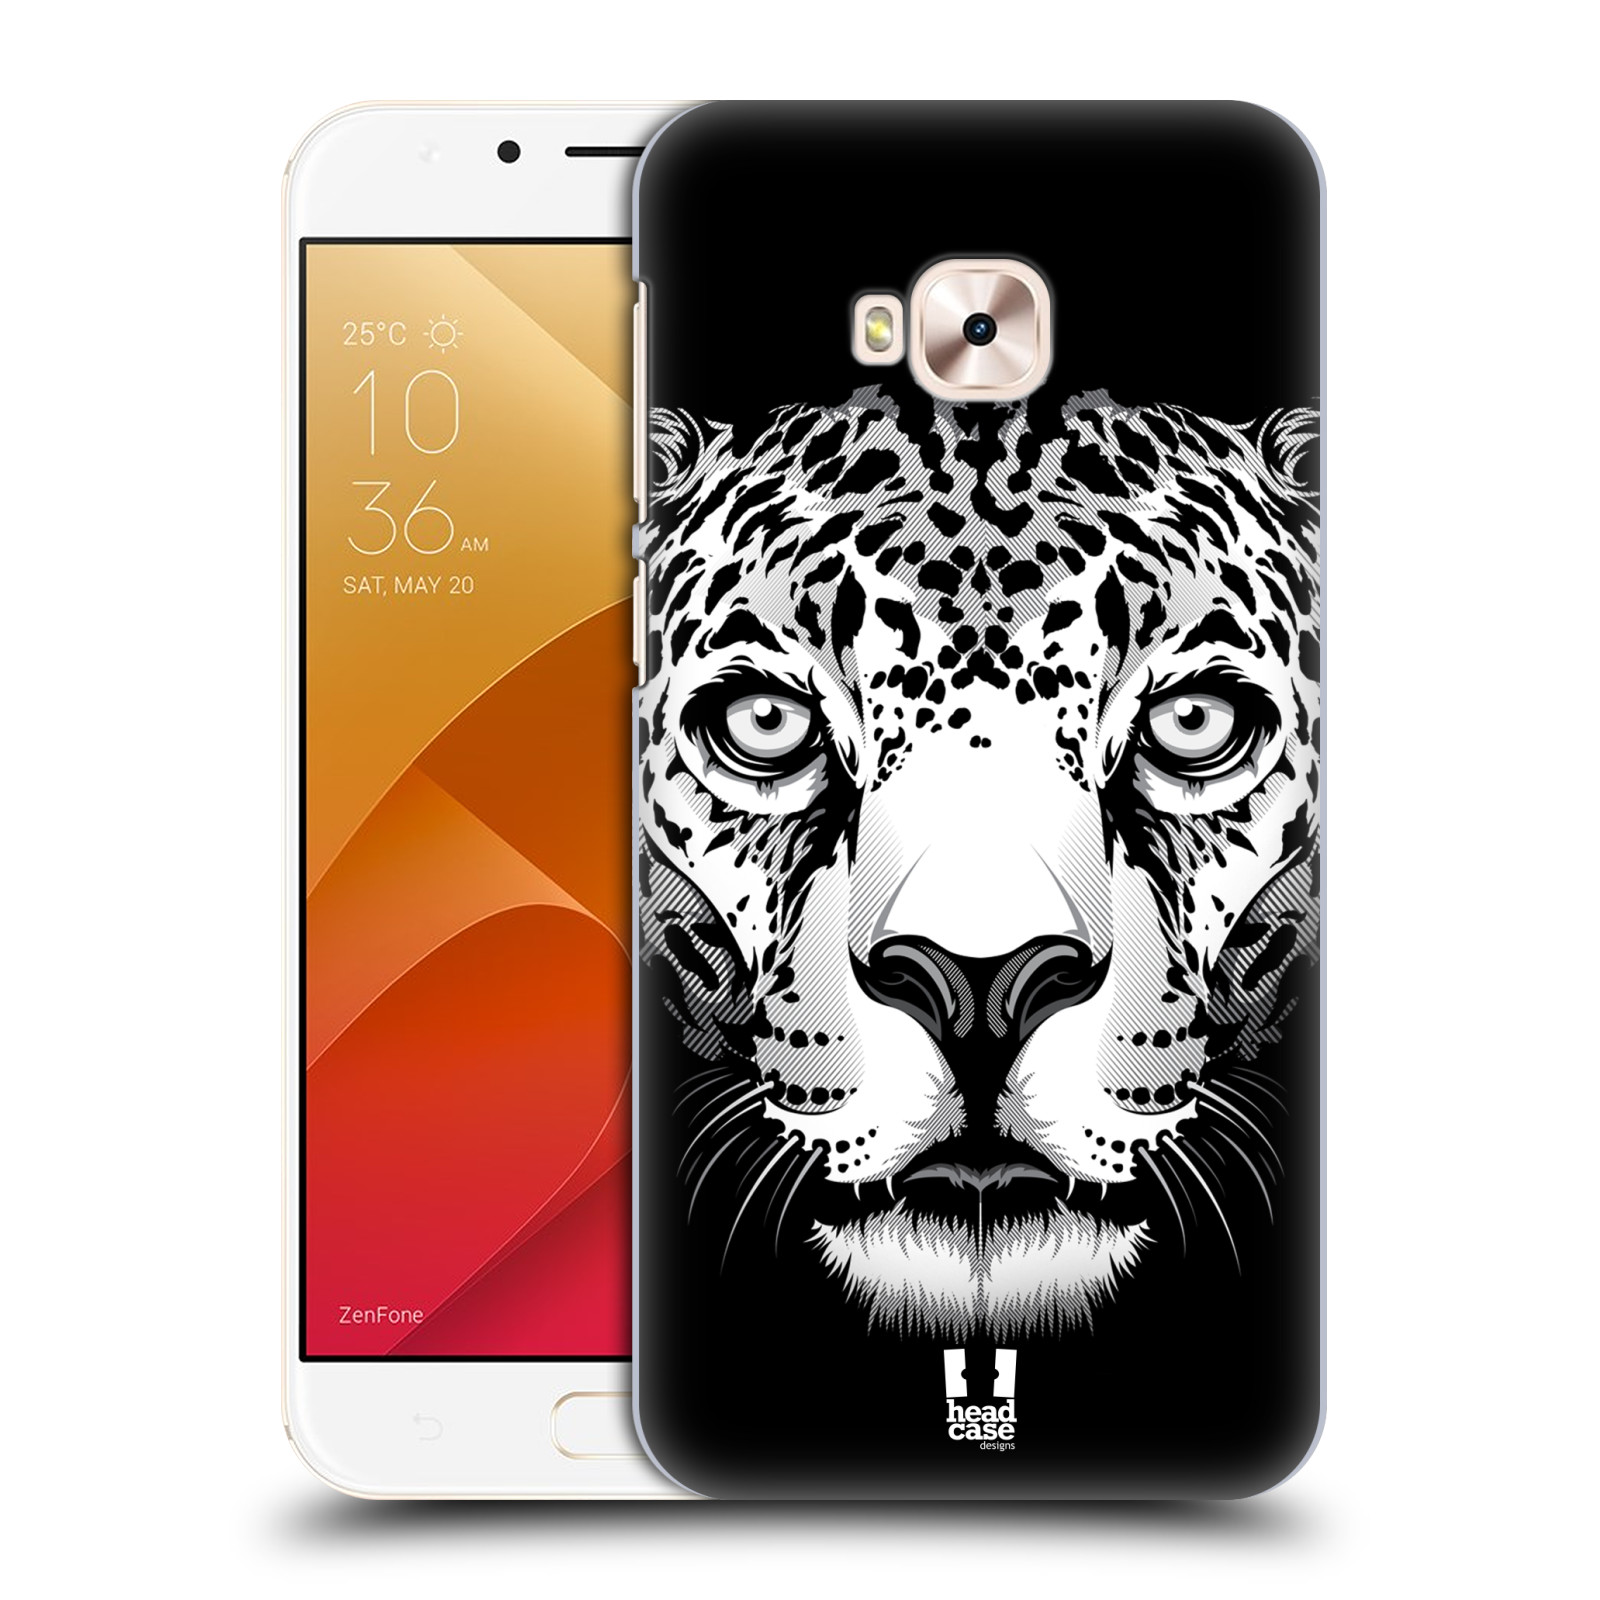 HEAD CASE plastový obal na mobil Asus Zenfone 4 Selfie Pro ZD552KL vzor Zvíře kreslená tvář leopard